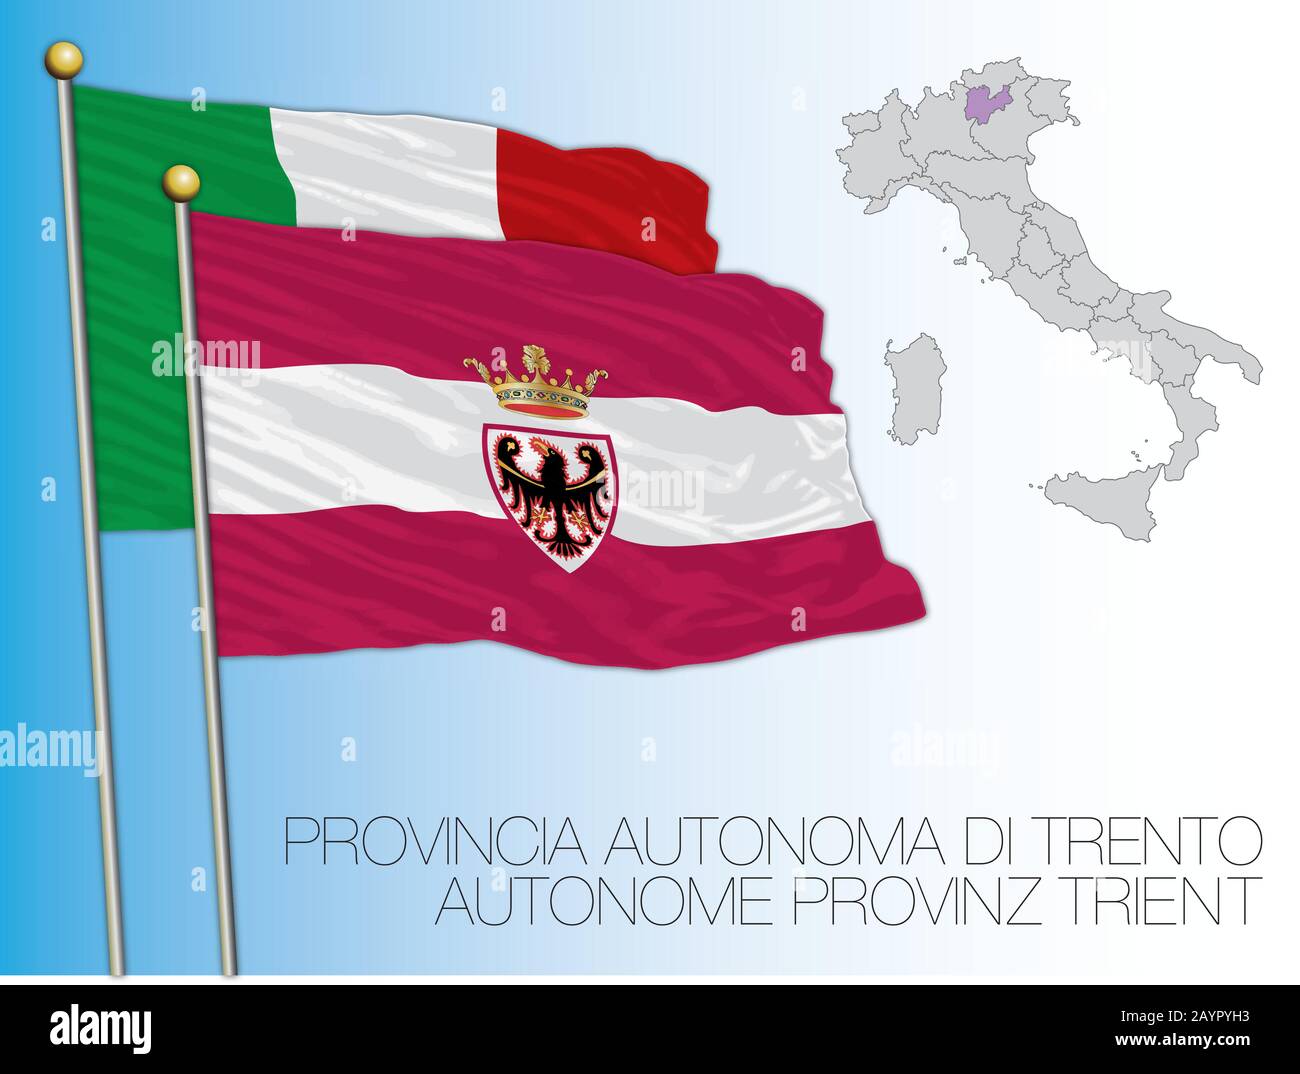 Trentin, officiellement la province autonome du Trento drapeau et carte, Italie, illustration vectorielle Illustration de Vecteur